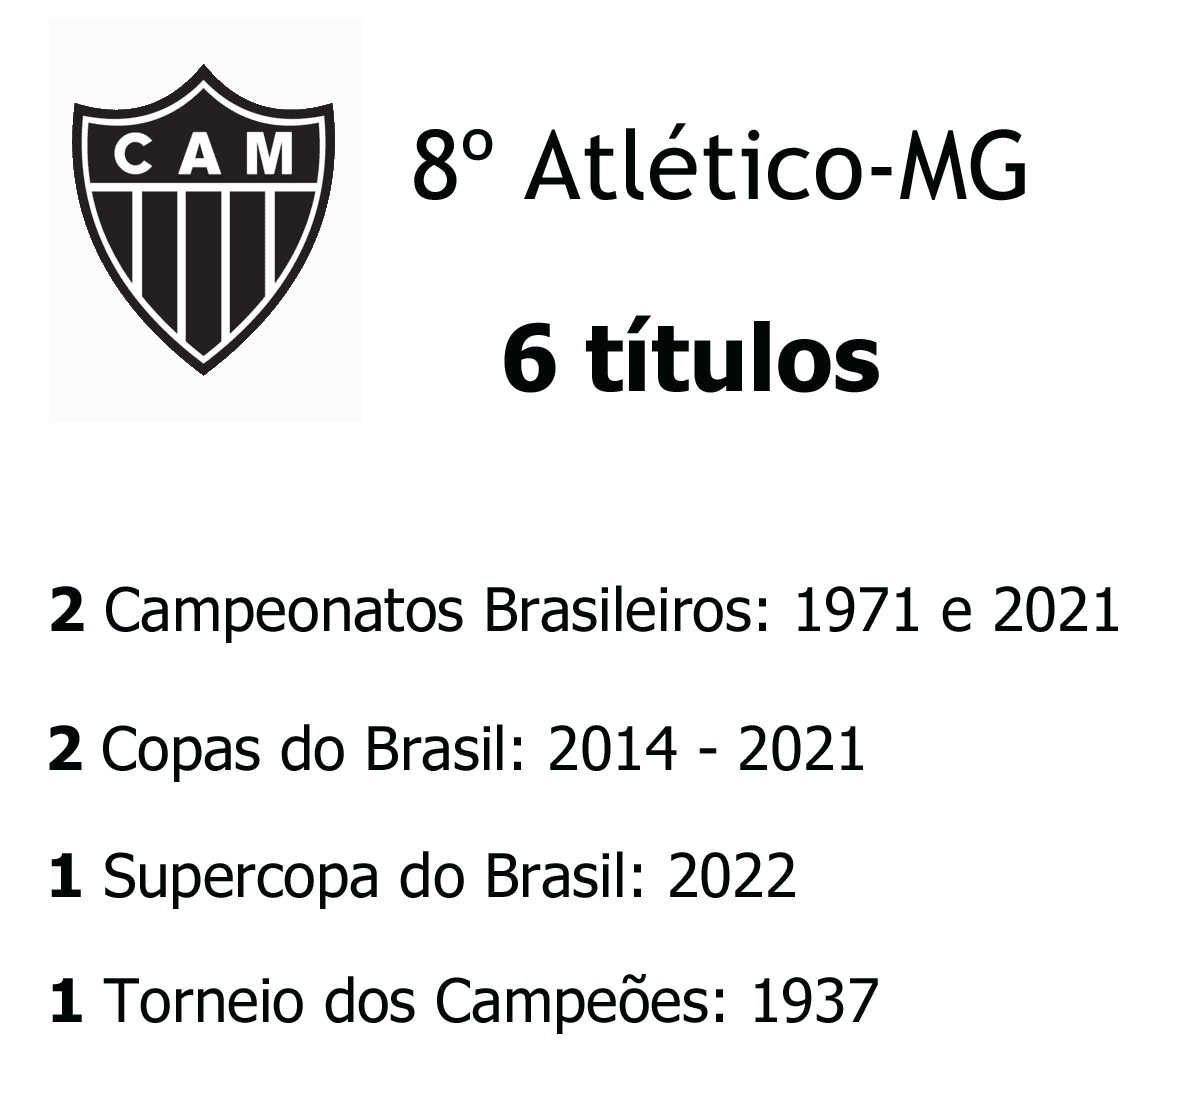 10 Clubes com mais Títulos Nacionais no Brasil - Imortais do Futebol